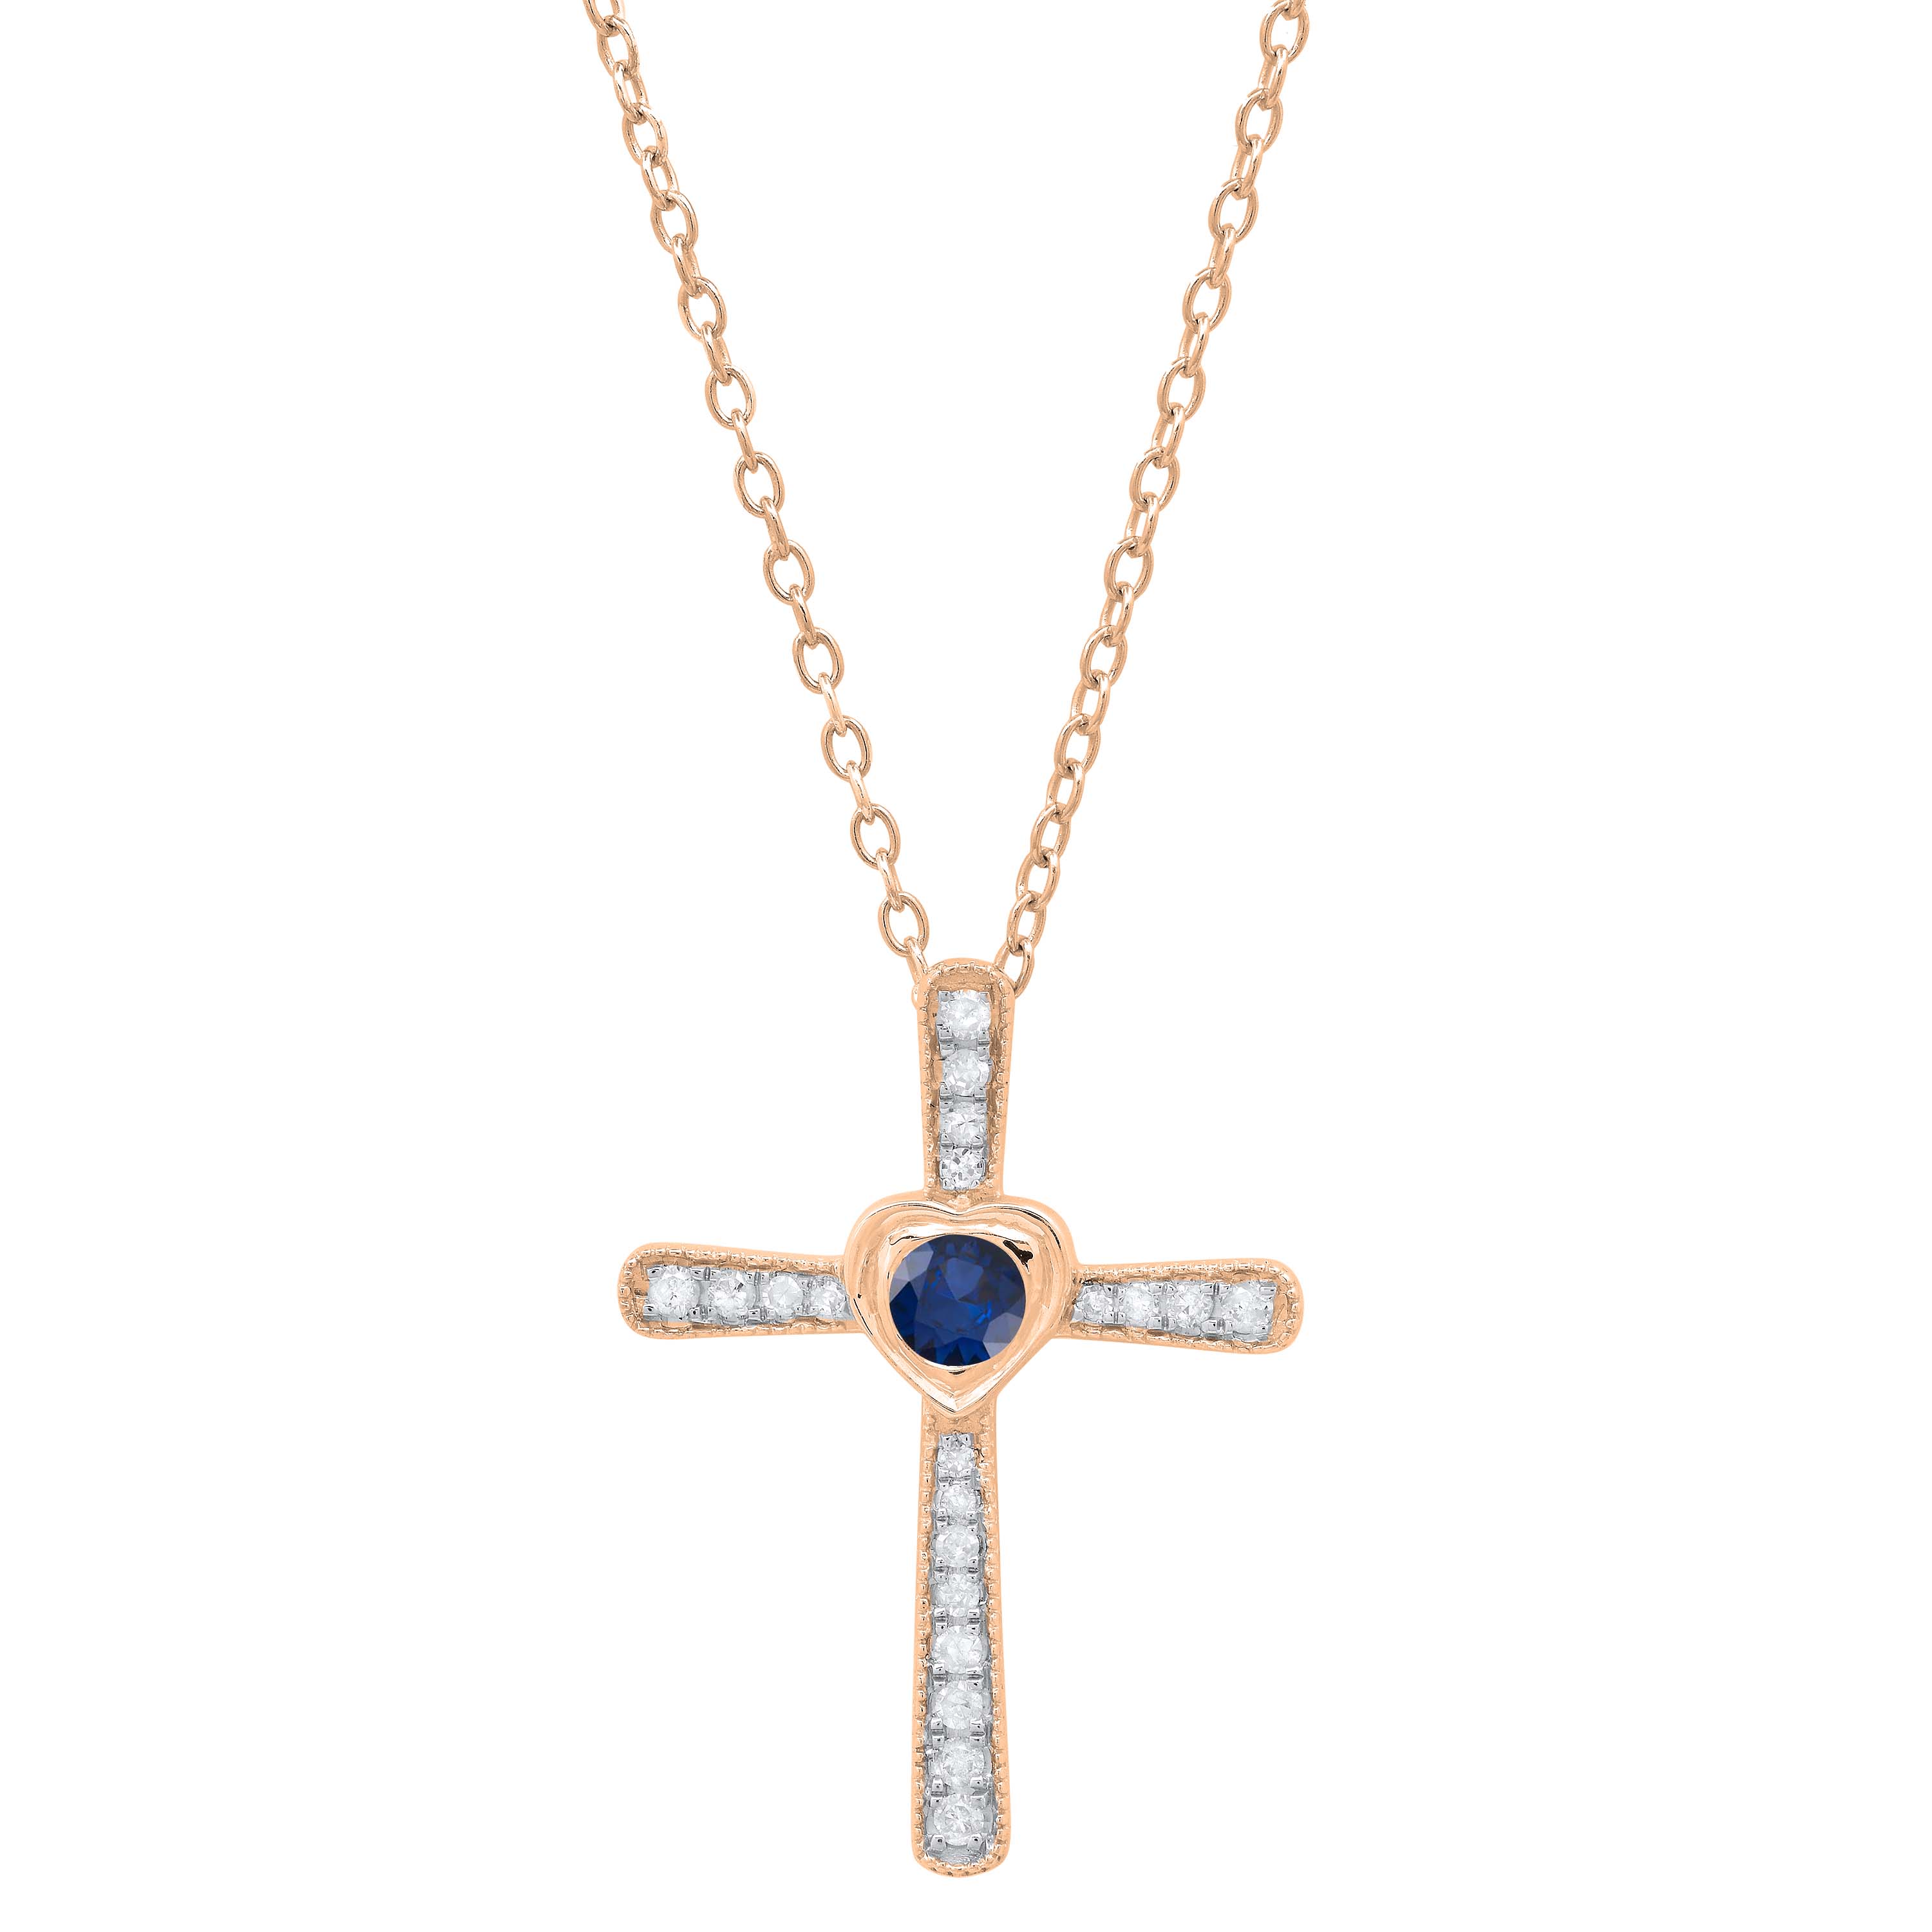 Buy 3.5 mm Round Blue Sapphire & White Diamond Ladies Heart Cross